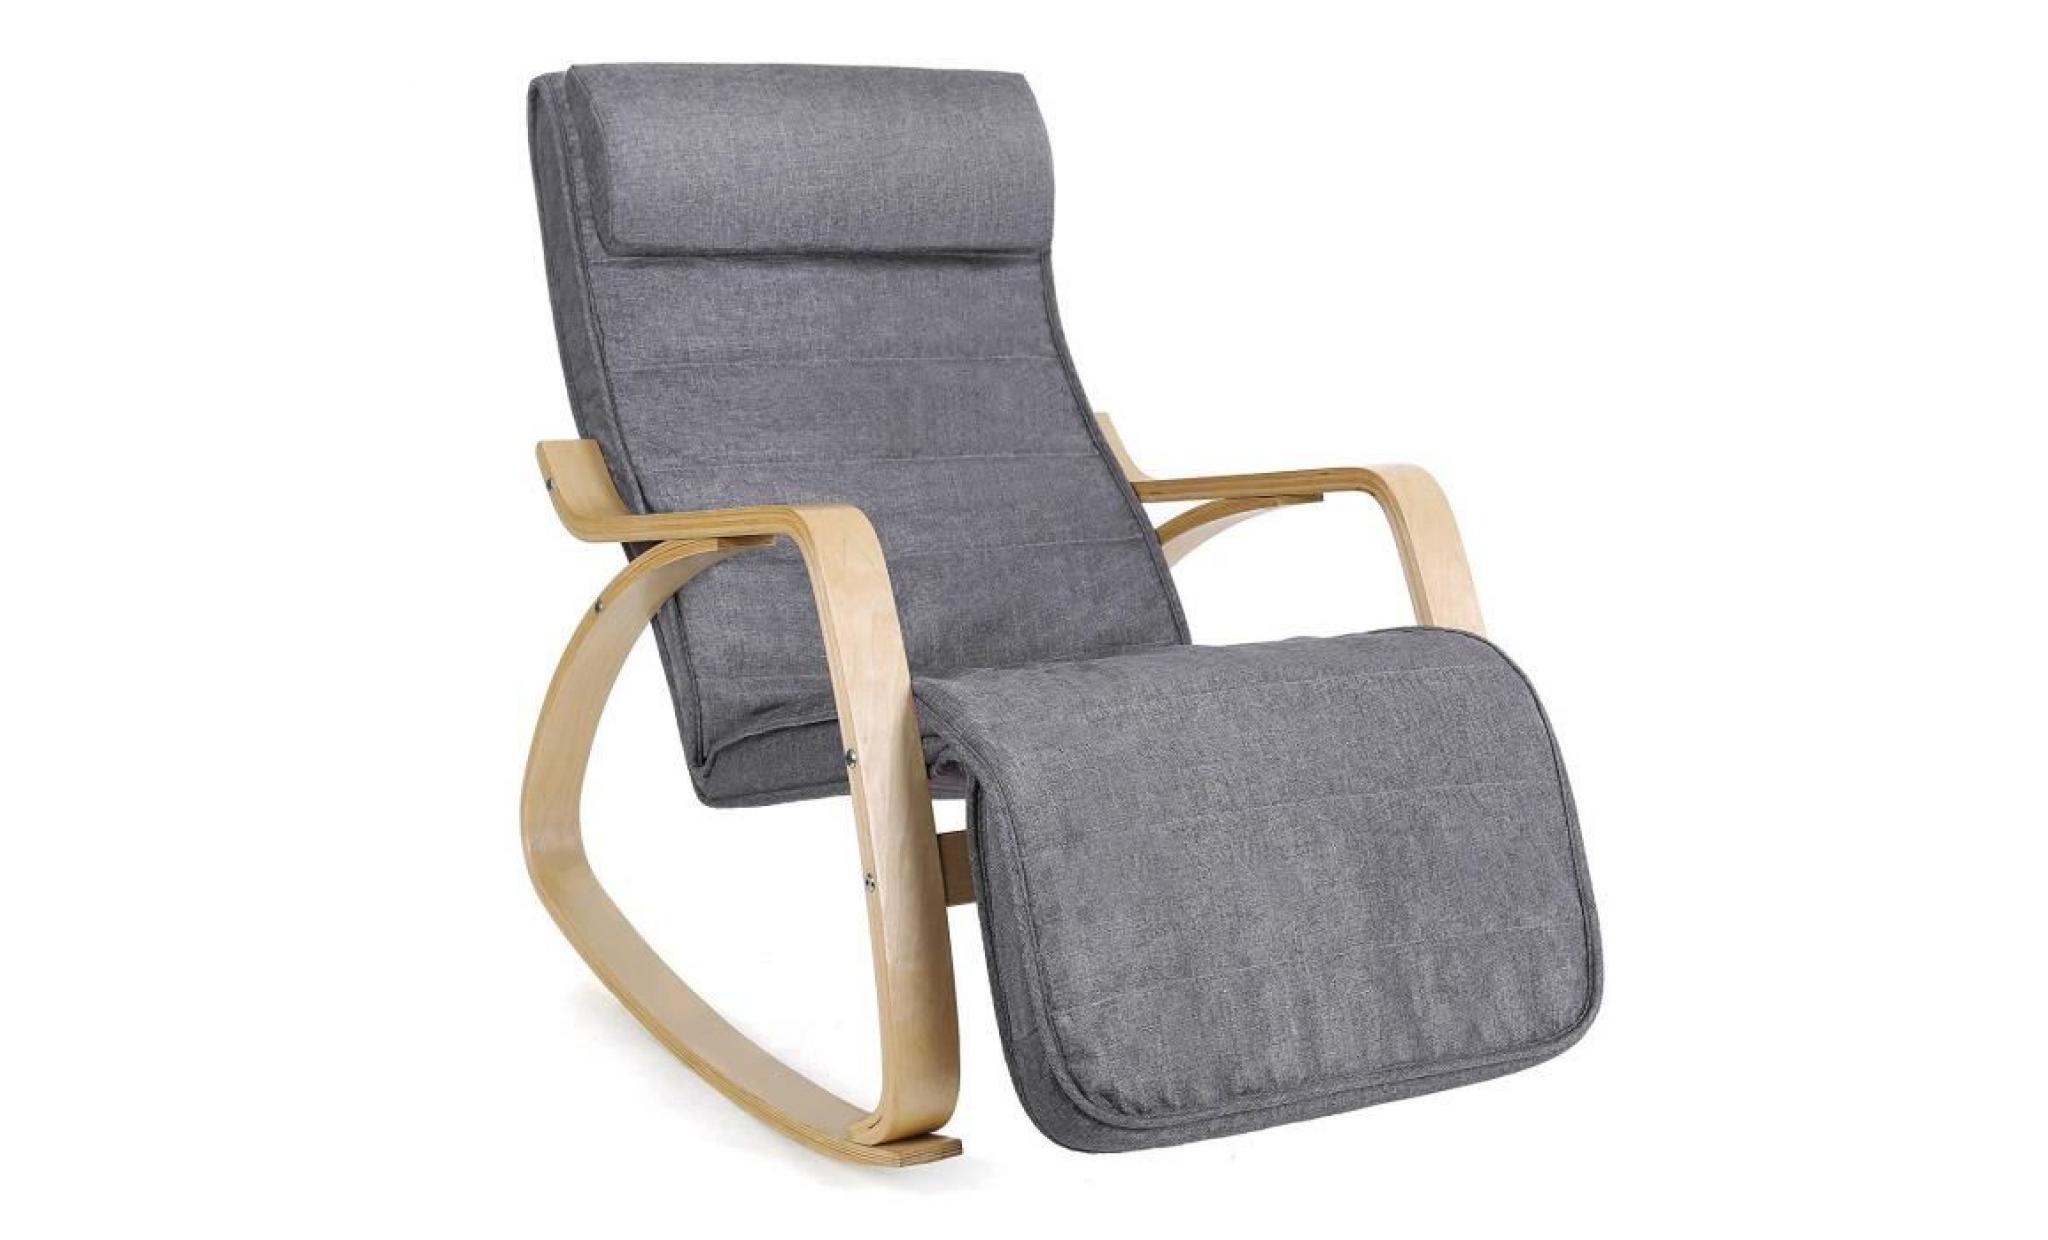 songmics fauteuil à bascule rocking chair avec repose pieds réglable charge maximum 150 kg lyy11g pas cher